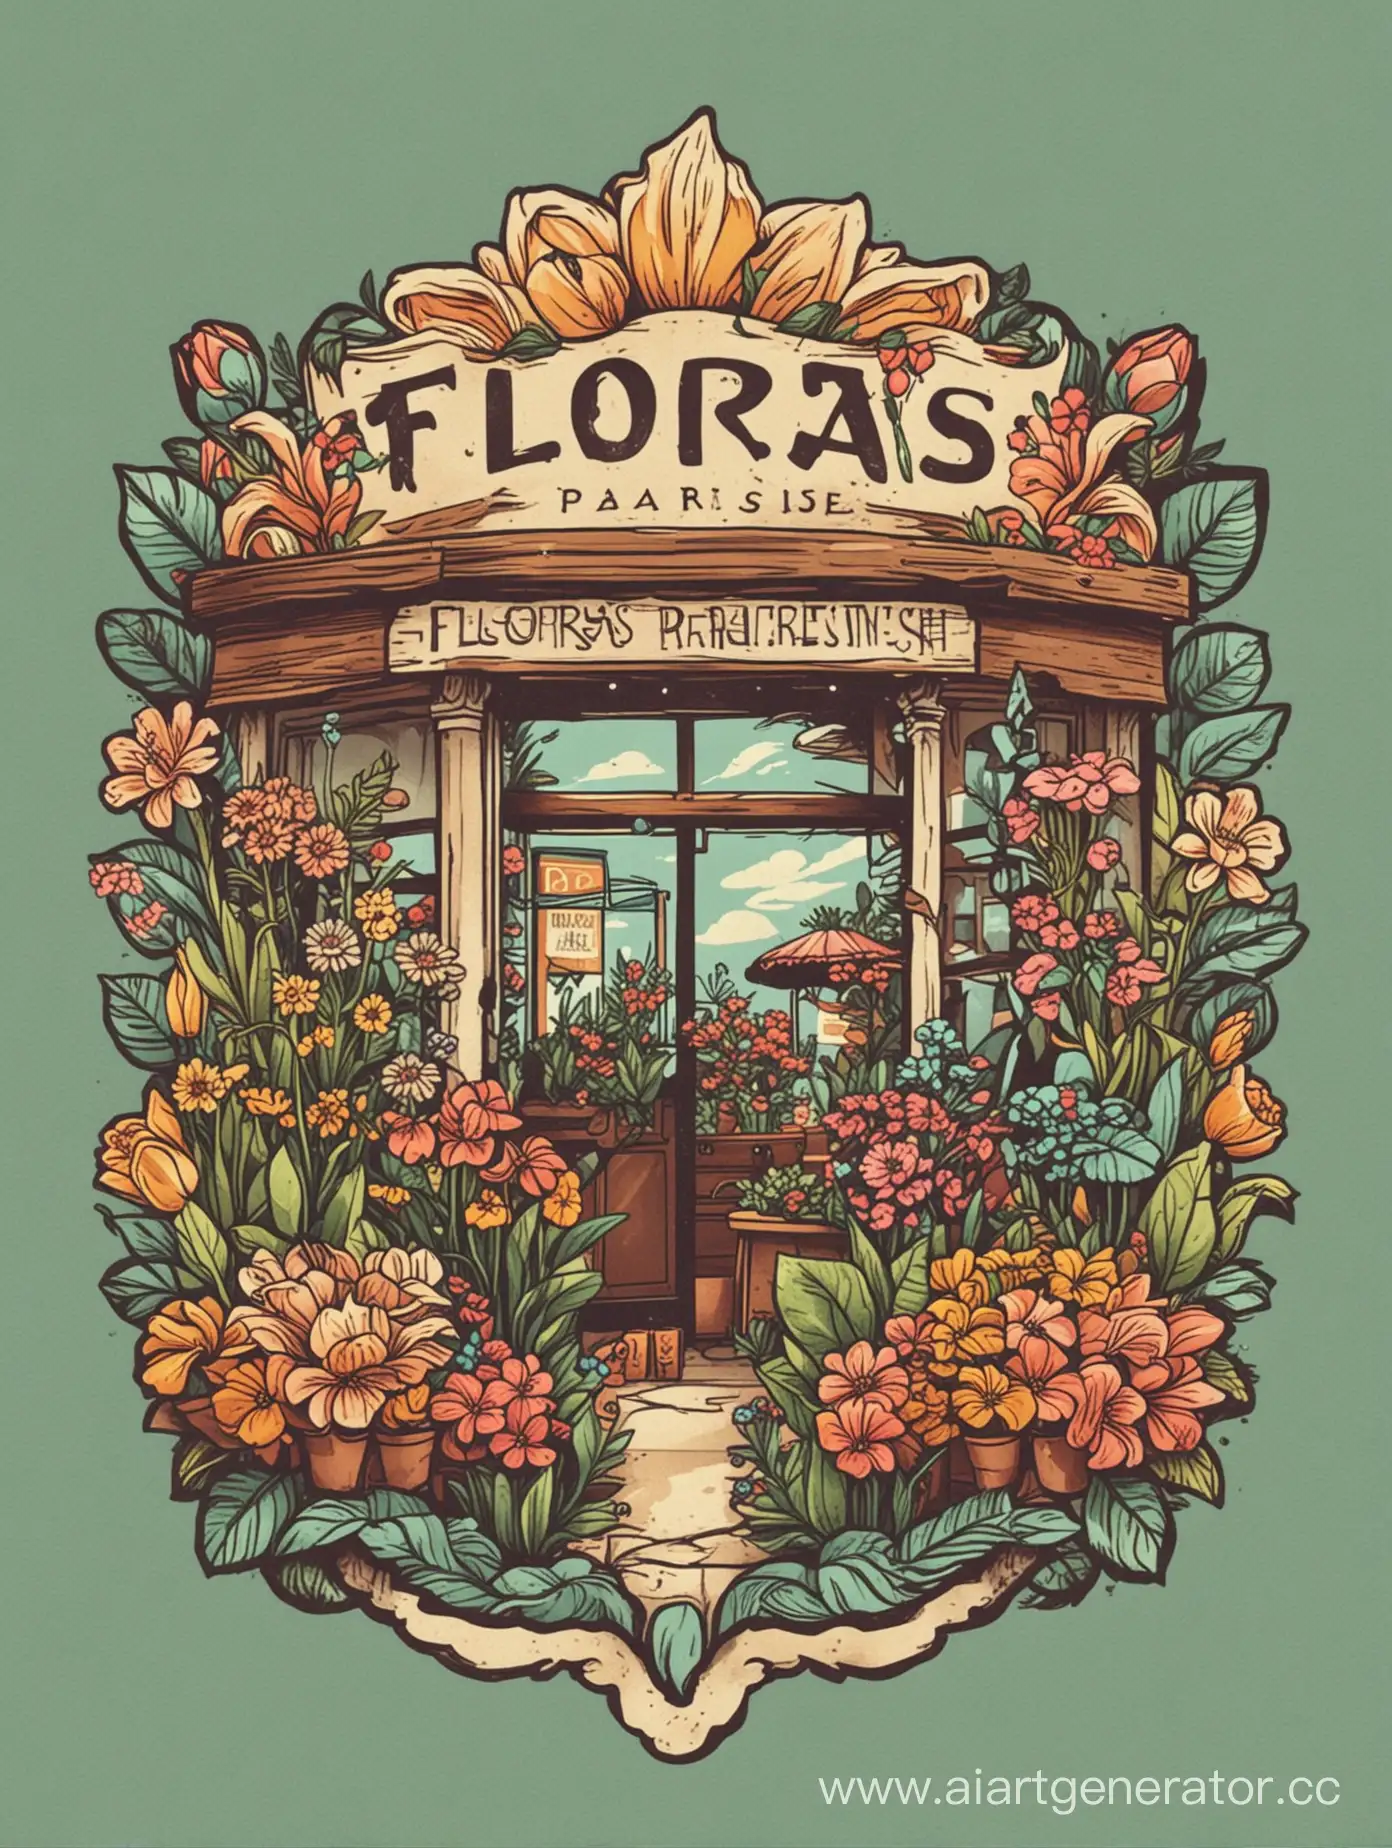 придумай логотип для цветочного магазина  Flora’s Paradise в стиле 
 инди кид